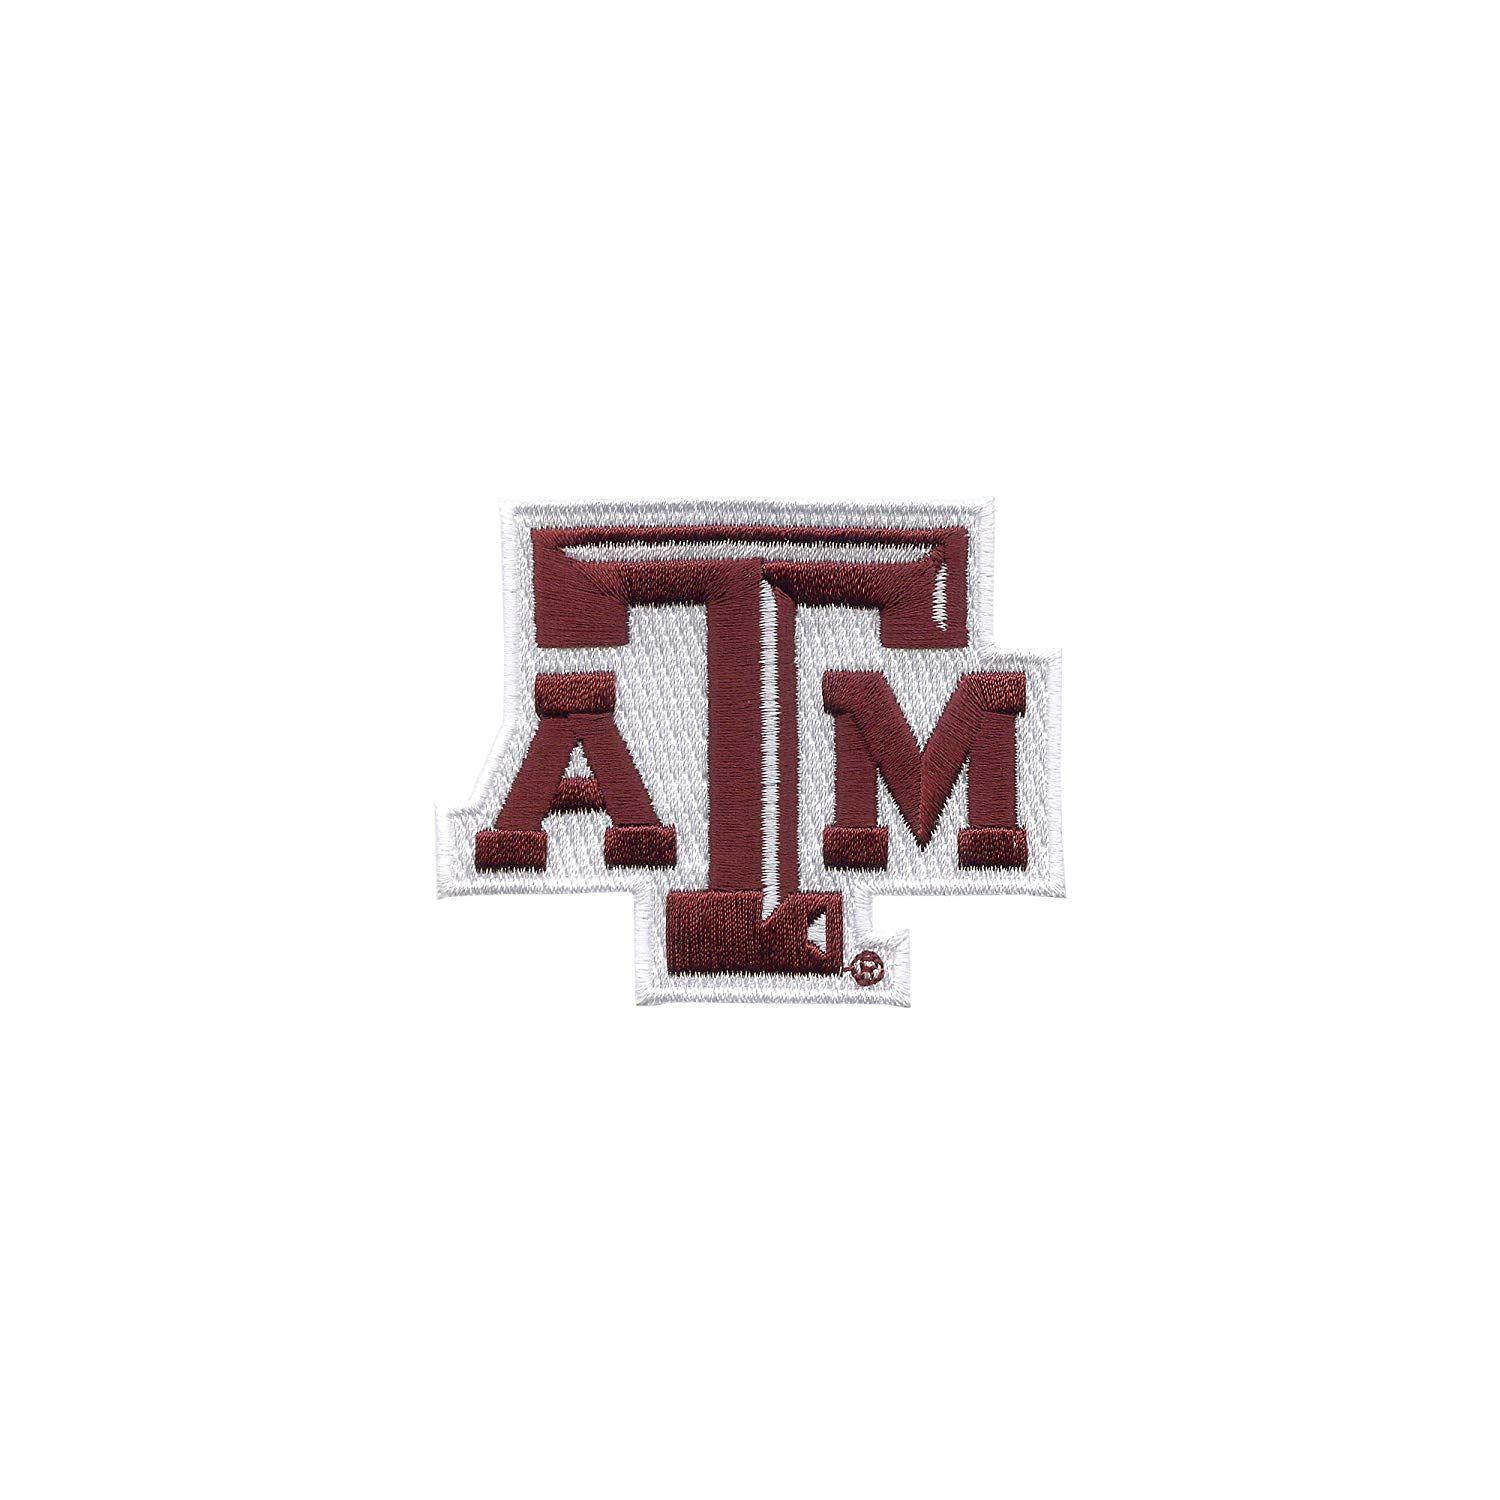 Aggies Logo - Tervis 1056035 Texas A&M Aggies Logo Tumbler with Emblem